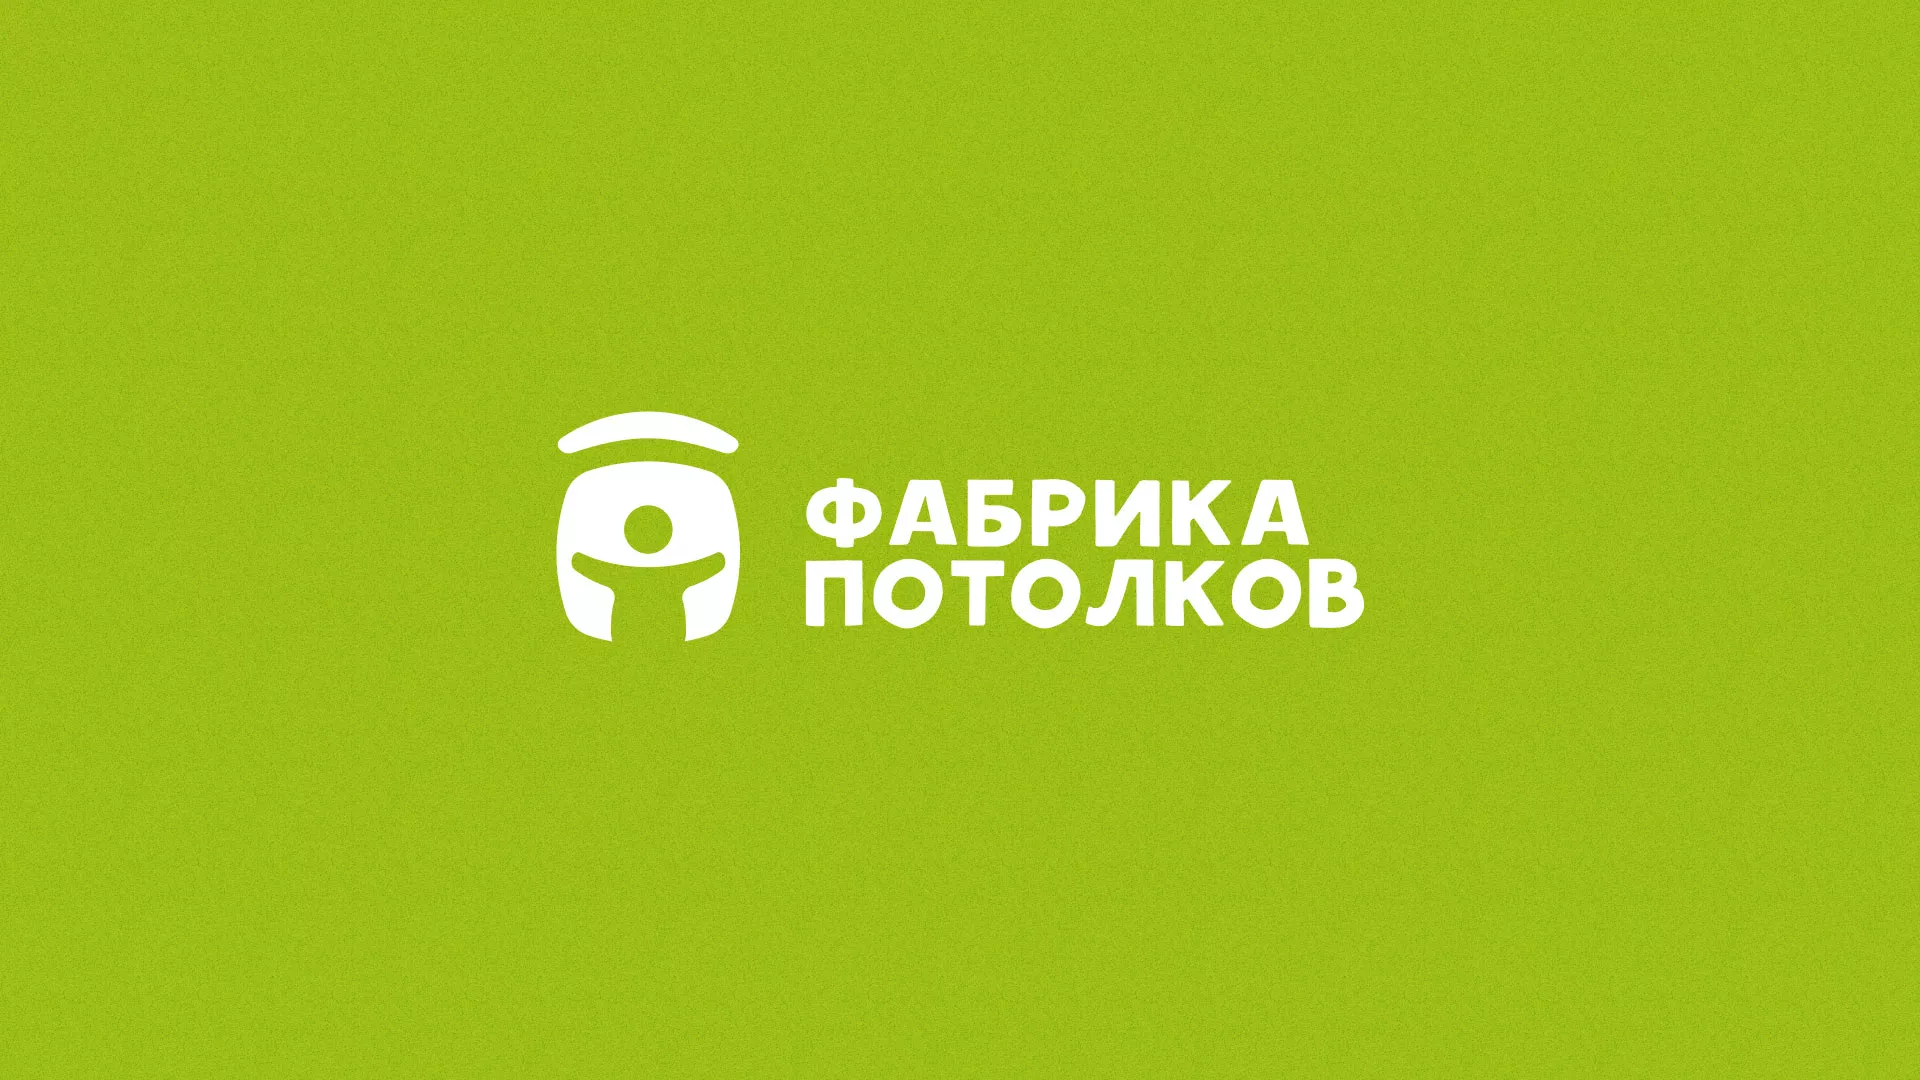 Разработка логотипа для производства натяжных потолков в Великом Устюге